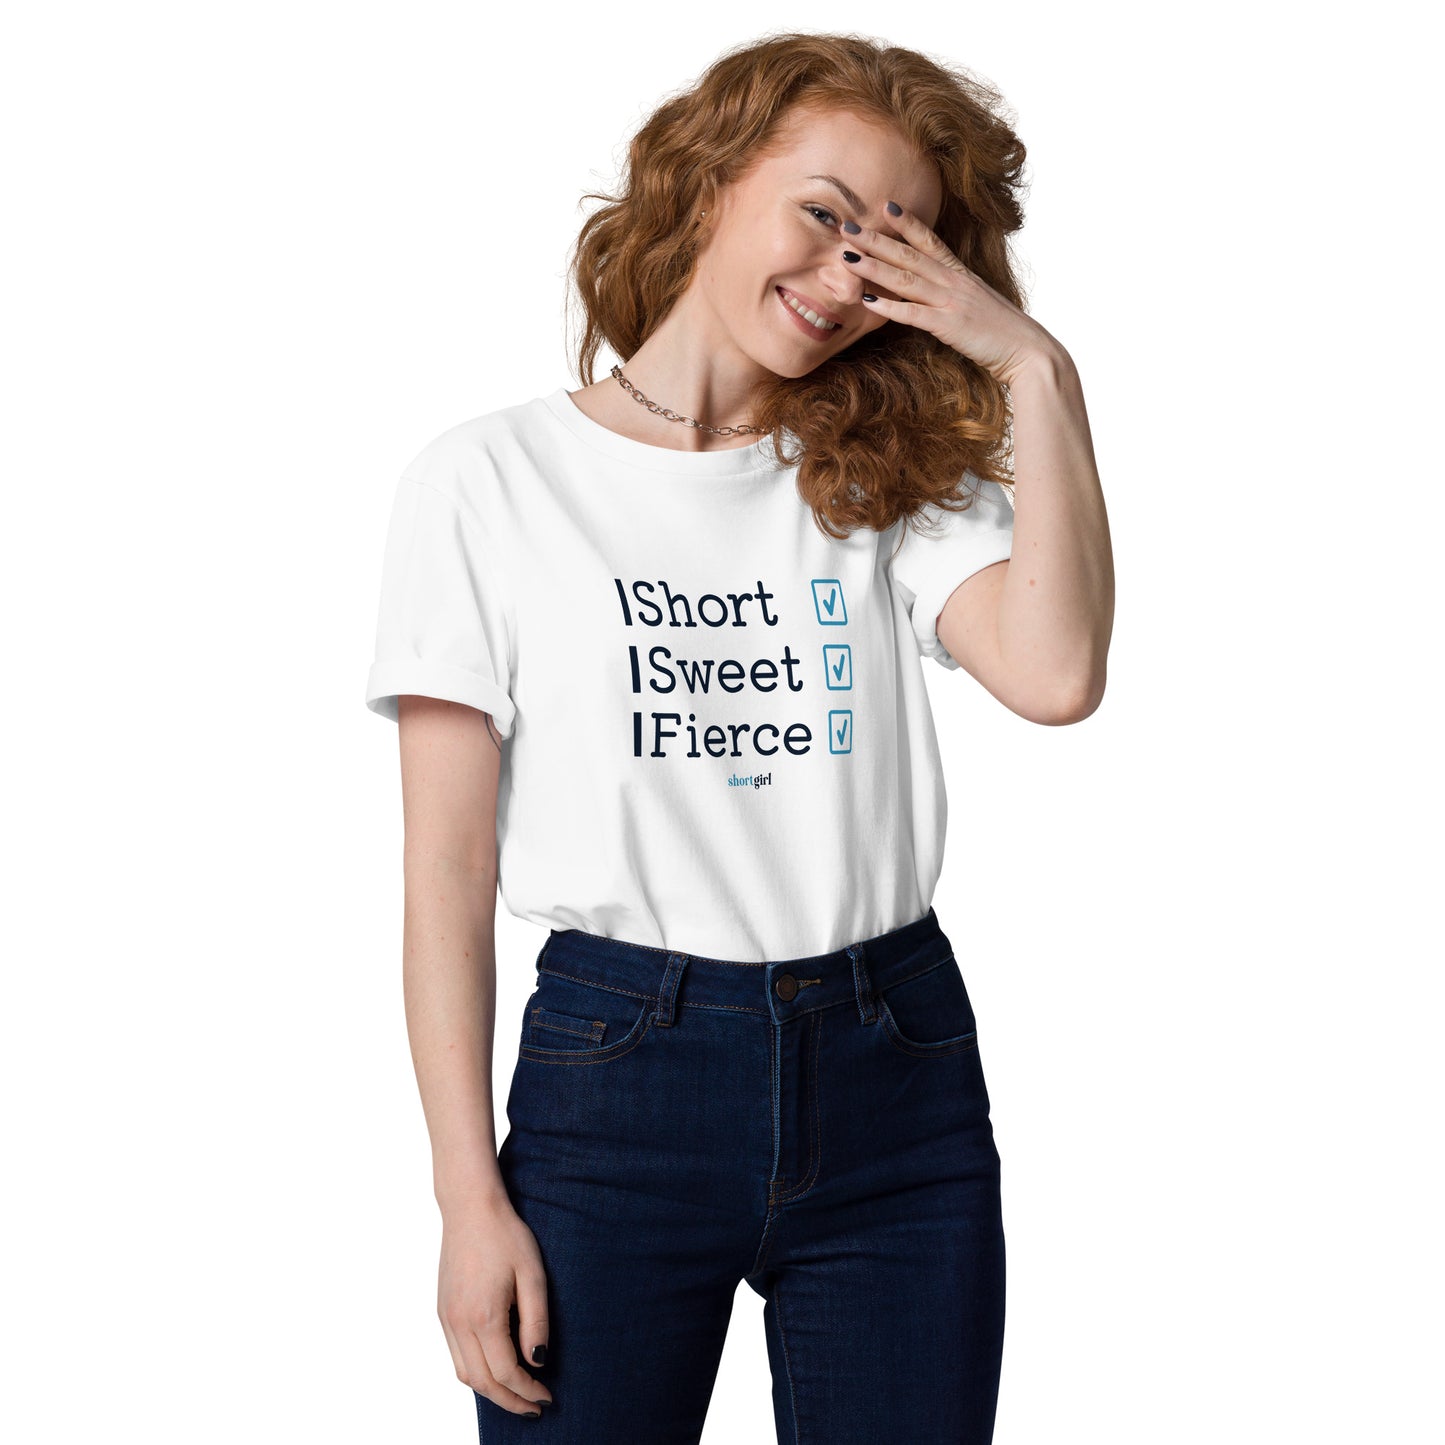 Unisex organic cotton t-shirt - Short, Sweet, Fierce